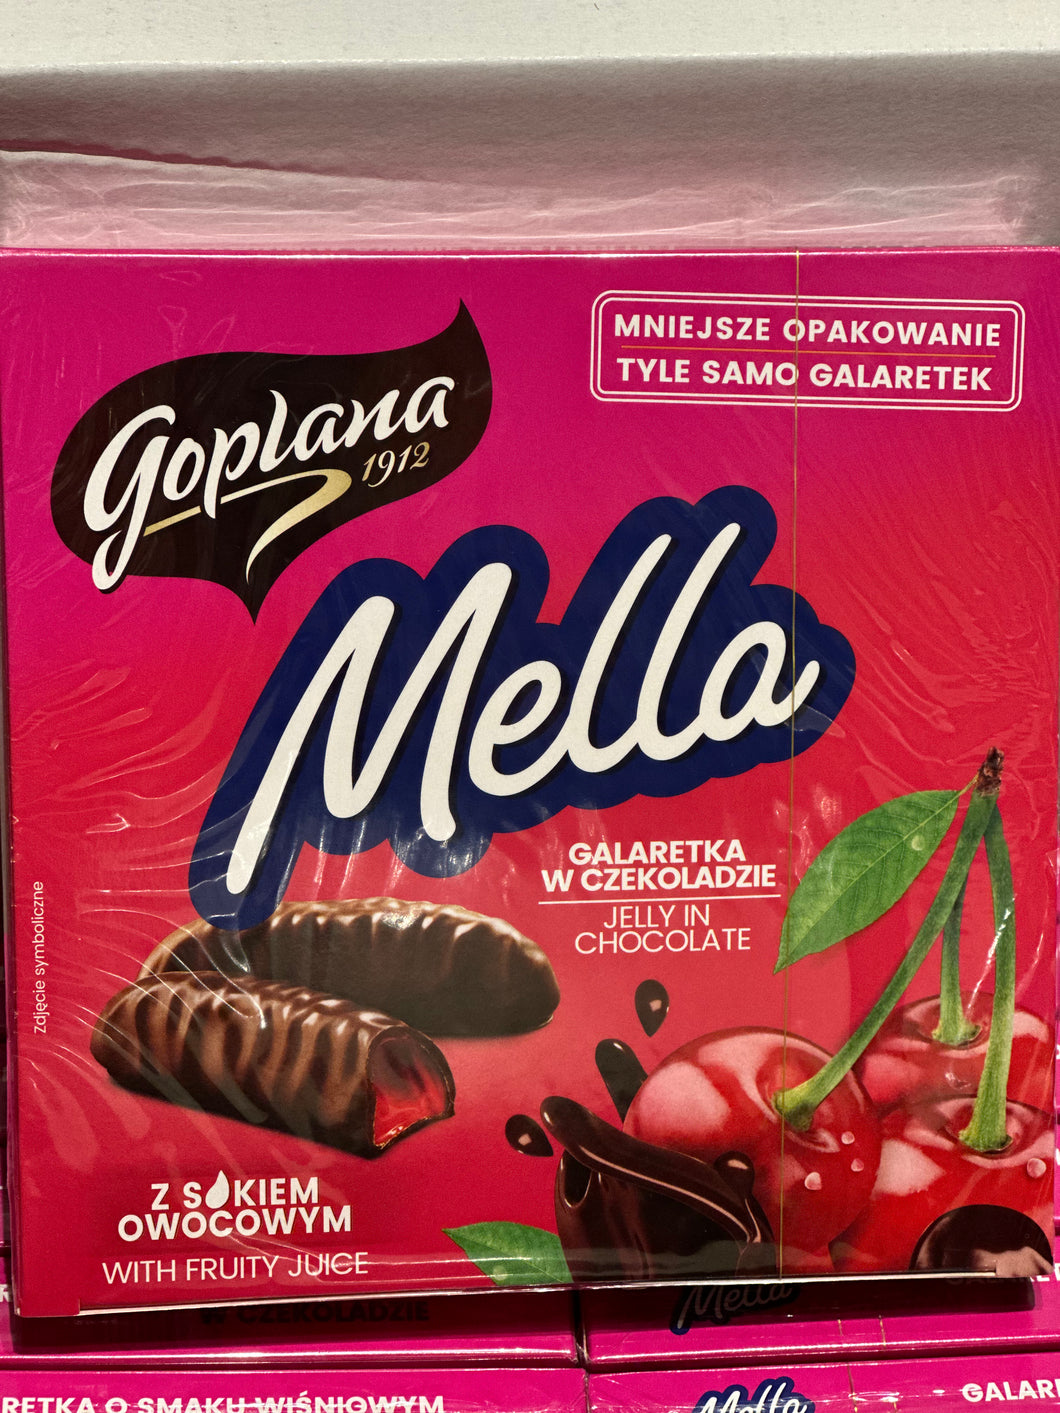 Chocolate Glazed Cherry Jelly Candy, Goplana Mella, 190g